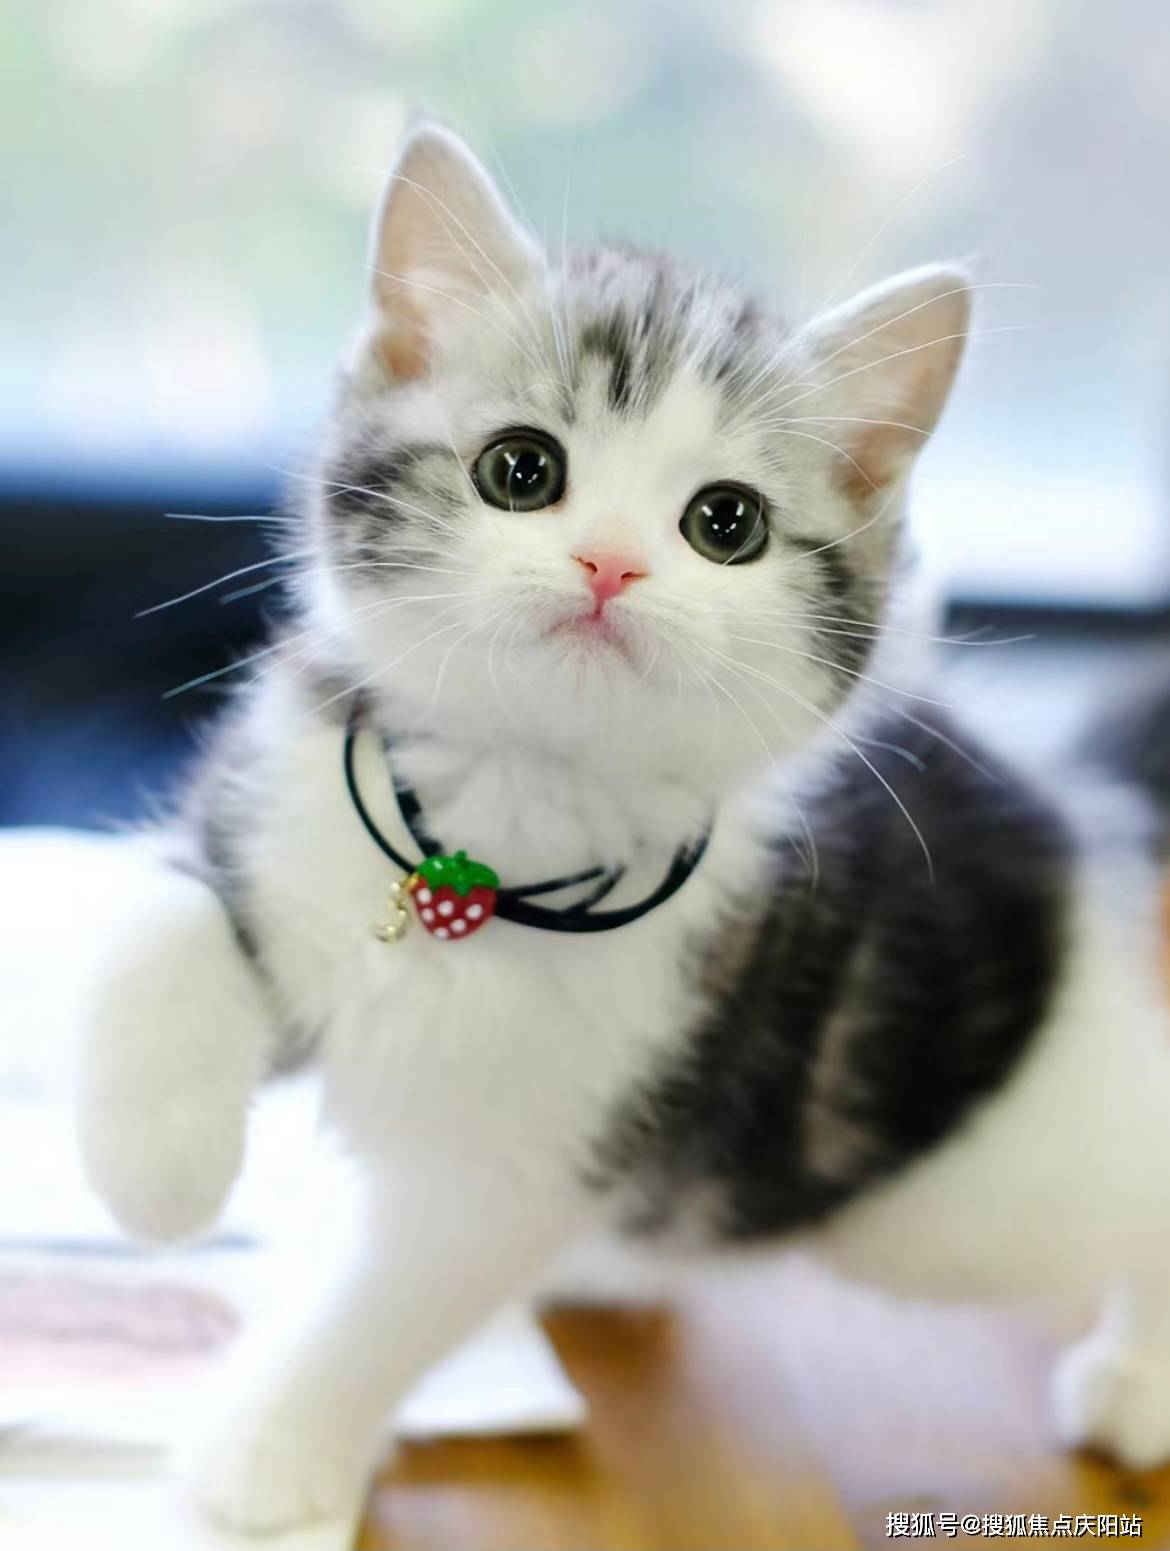 上海买美短起司猫首页网站(上海浦东新区)哪家宠物店买美短起司猫比较